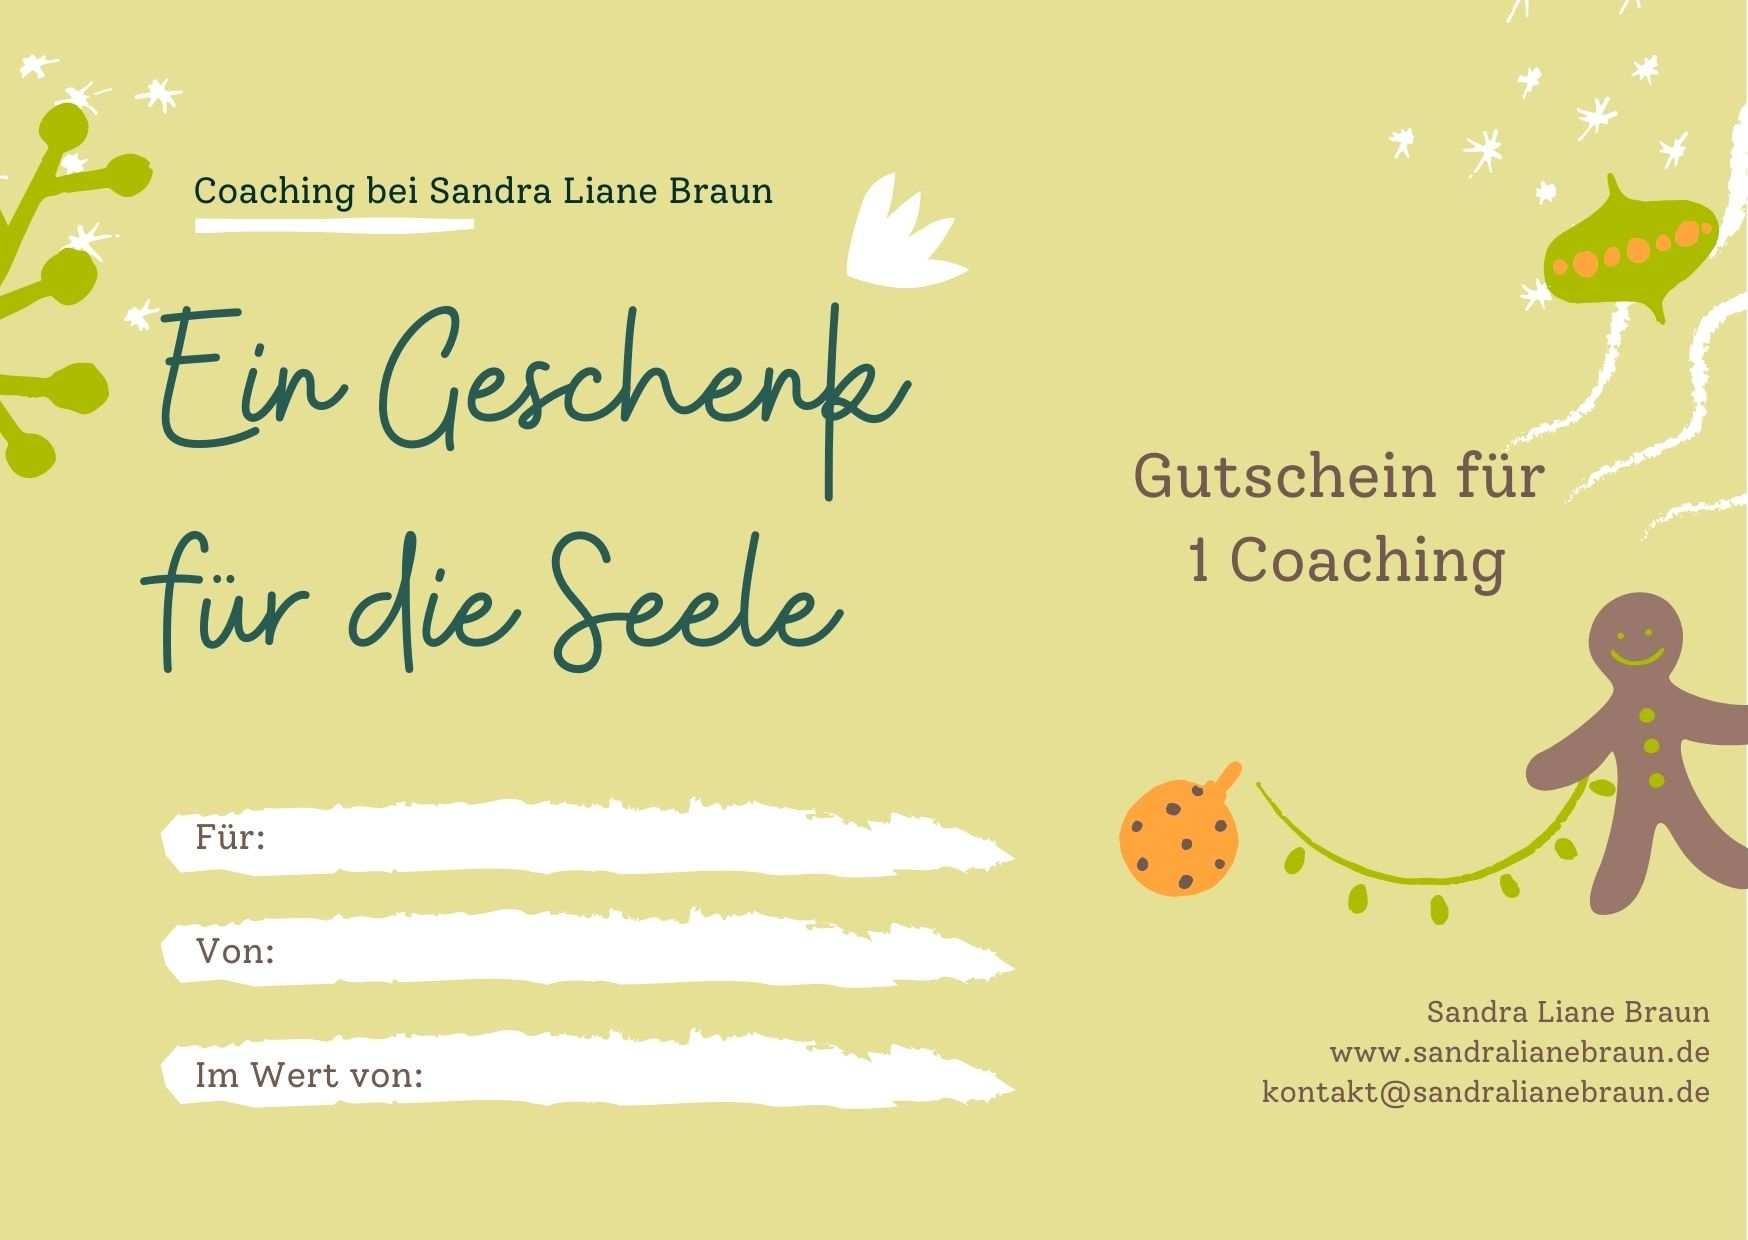 Gutschein Coaching